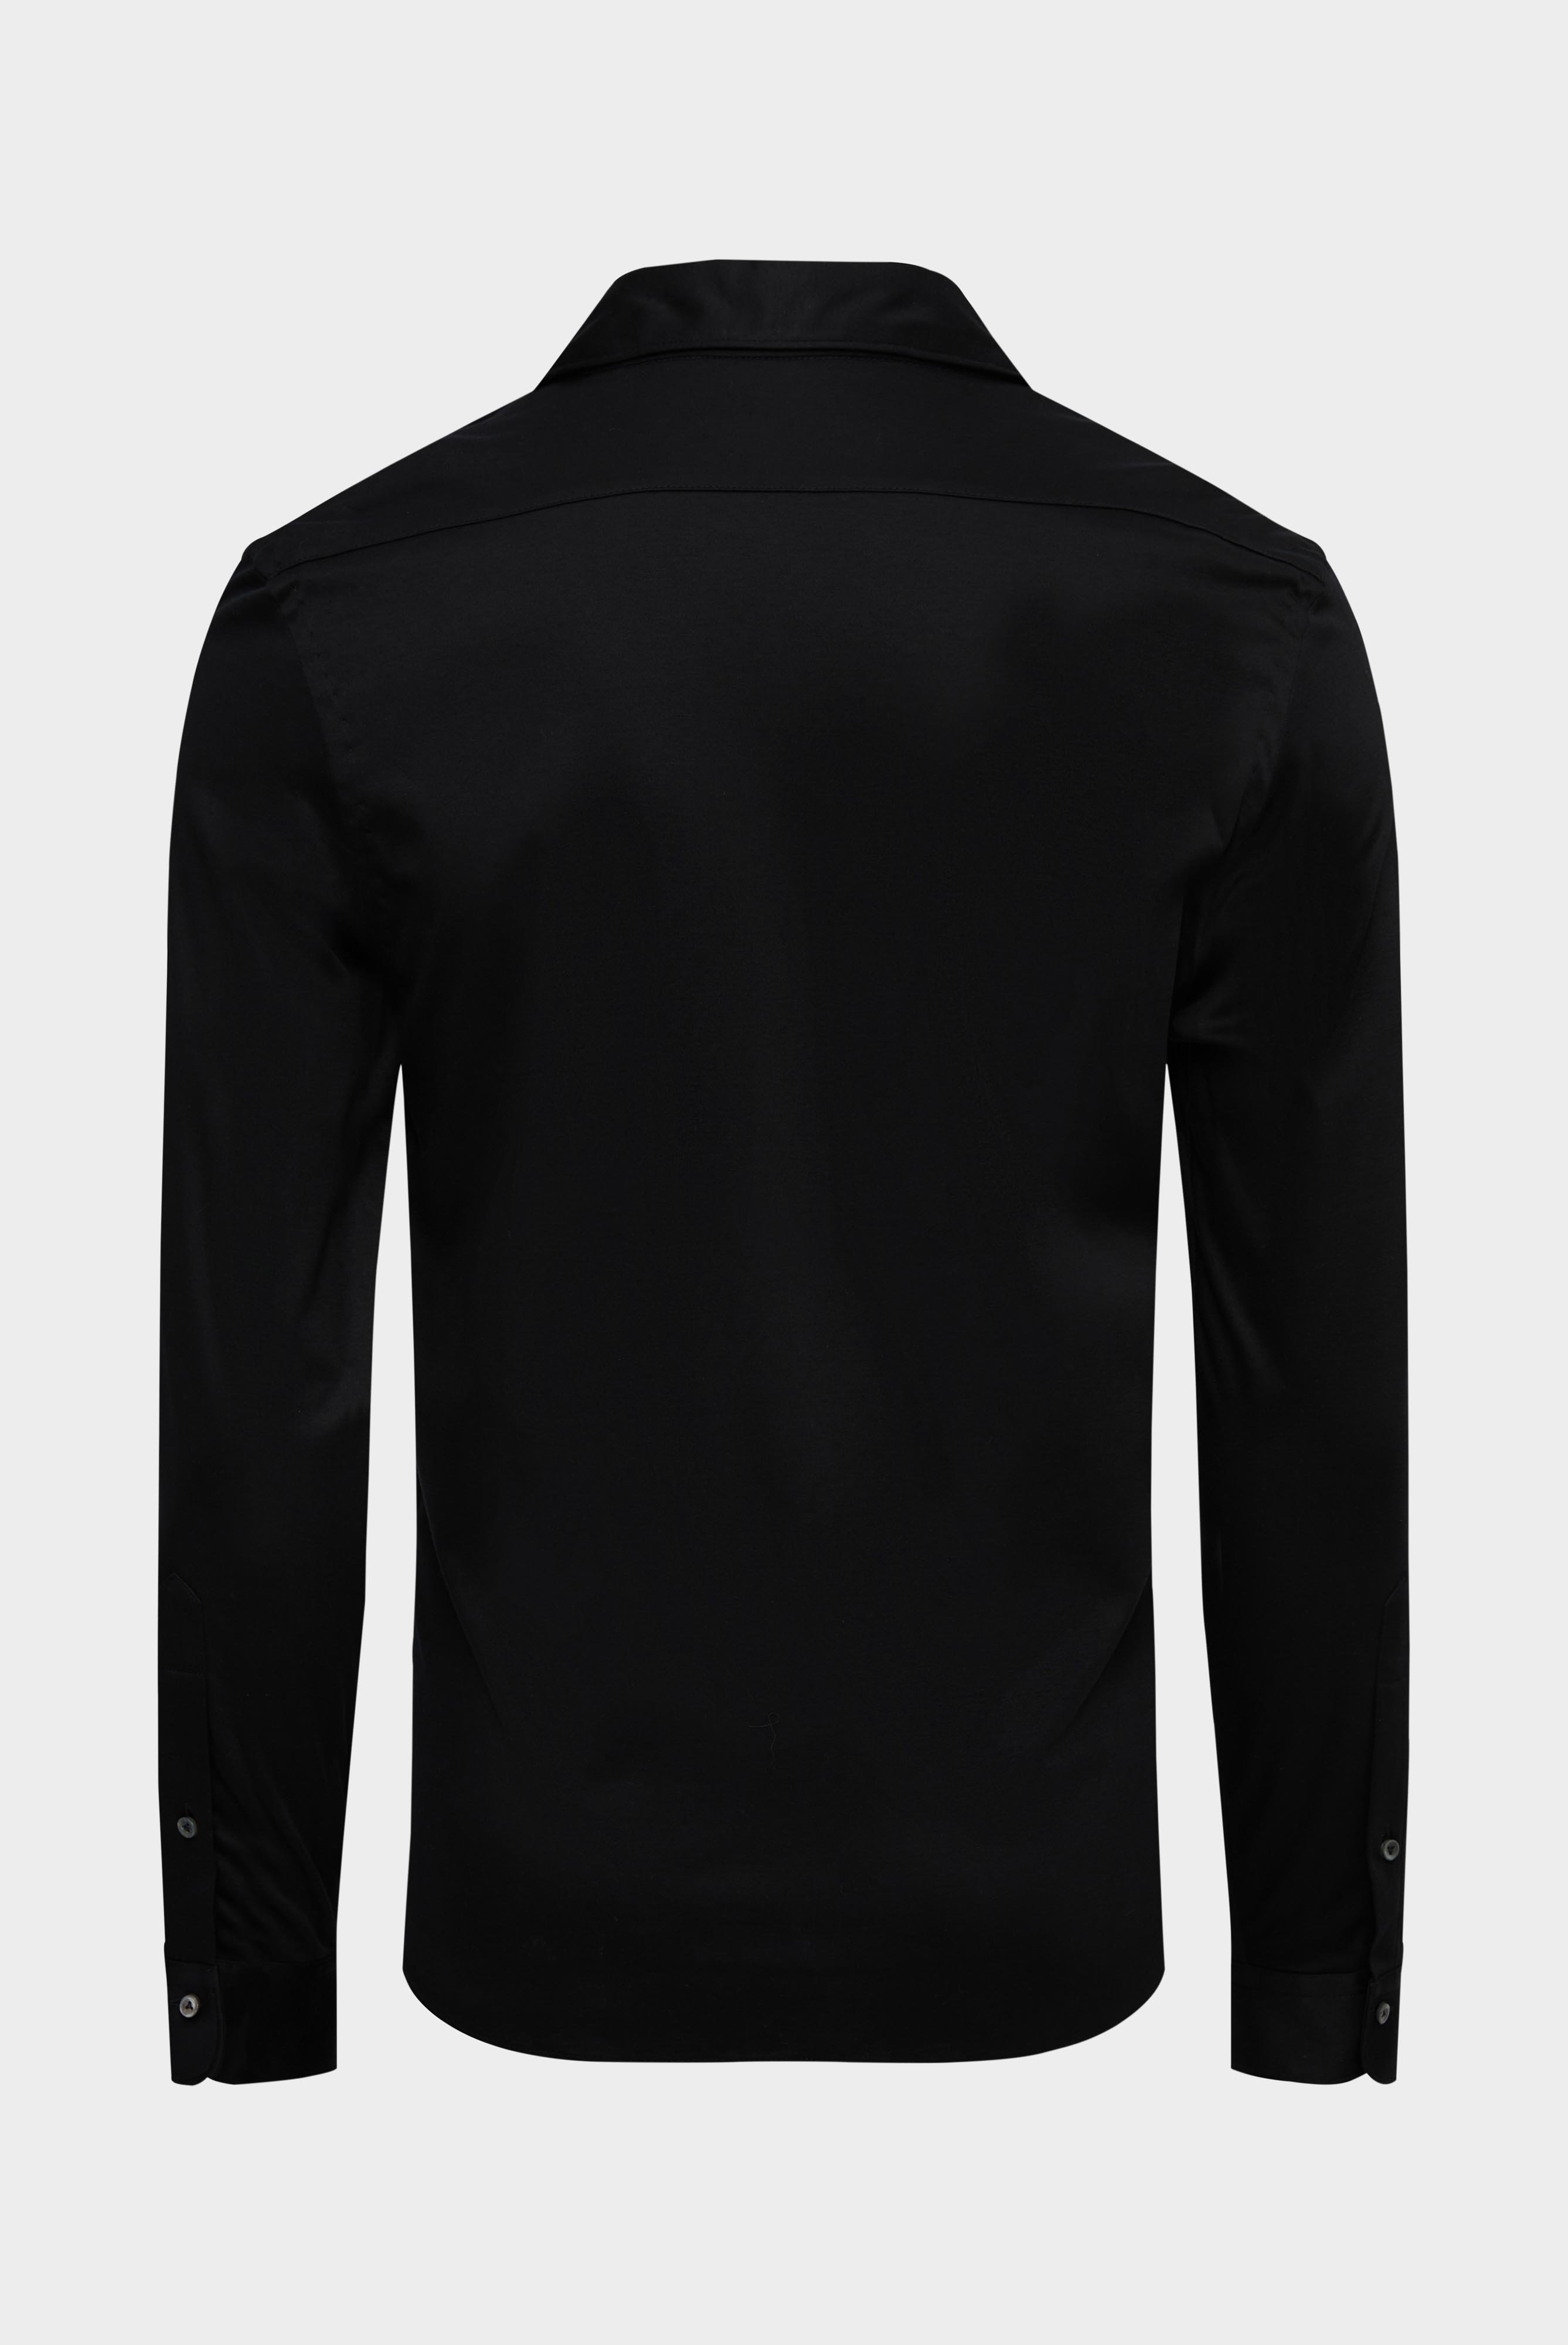 Jersey Hemden+Jersey Hemd aus Schweizer Baumwolle Slim Fit+20.1682.UC.180031.099.XXL